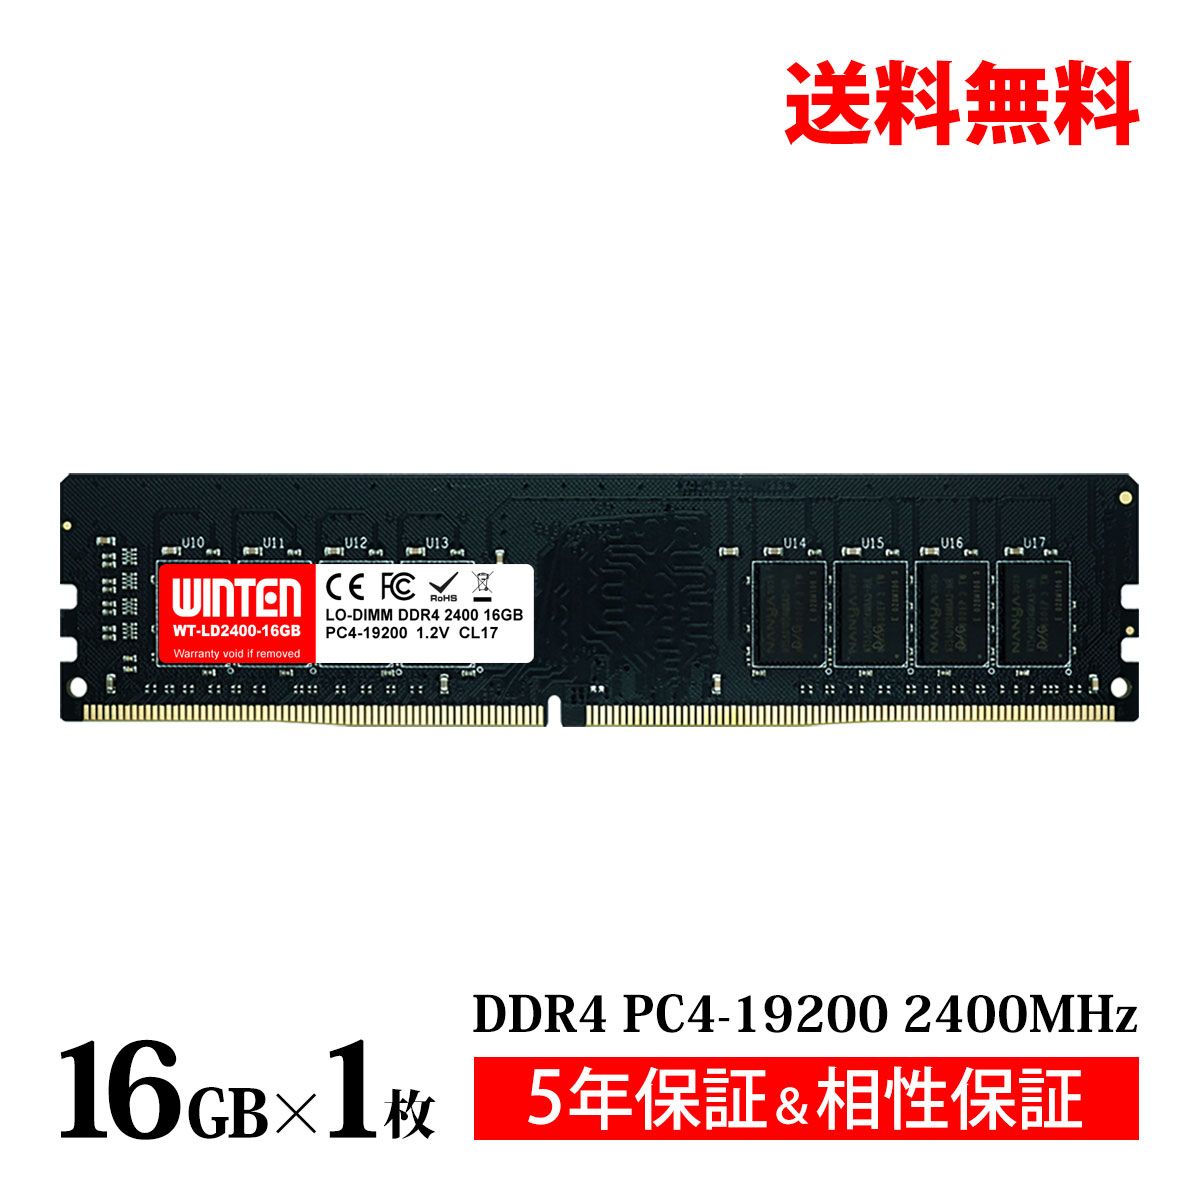 デスクトップPC用 メモリ 16GB PC4-19200(DDR4 2400) WT-LD2400-16GB【相性保証 製品5年保証 送料無料 即日出荷】DDR4 SDRAM DIMM 内蔵メモリー 増設メモリー 5604